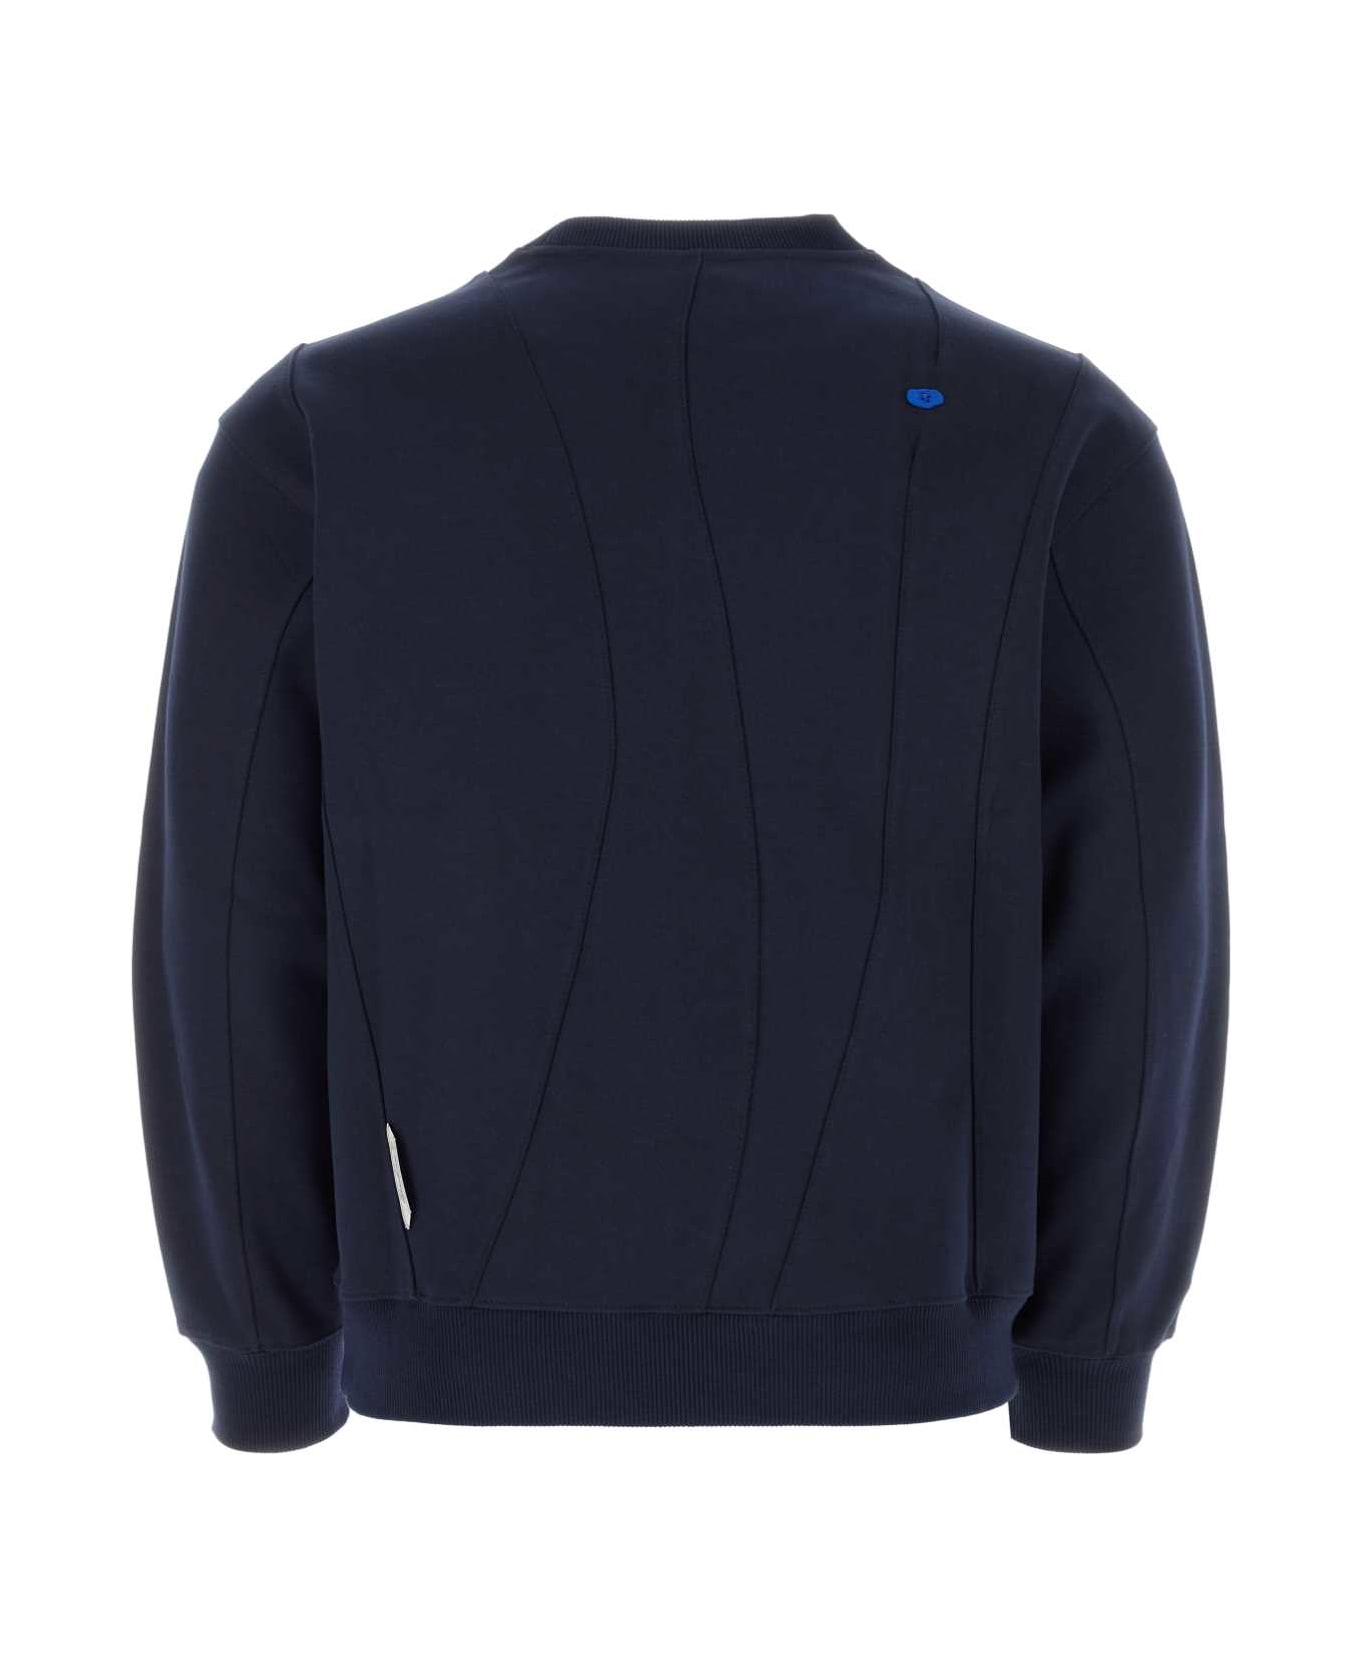 Ader Error Navy Blue Cotton Blend Sweatshirt - NAVY